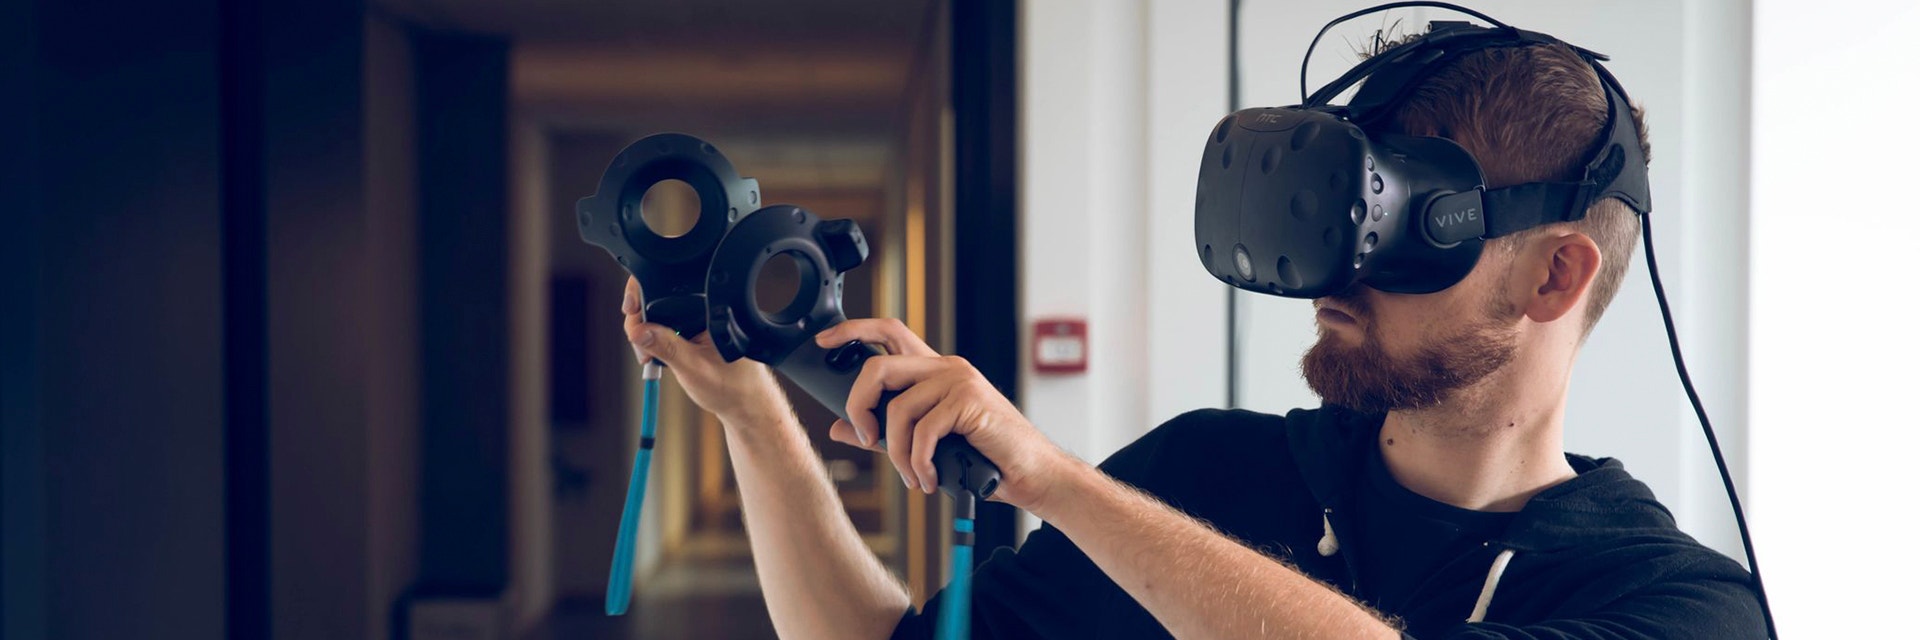 Mann, der Virtual-Reality-Technologie verwendet